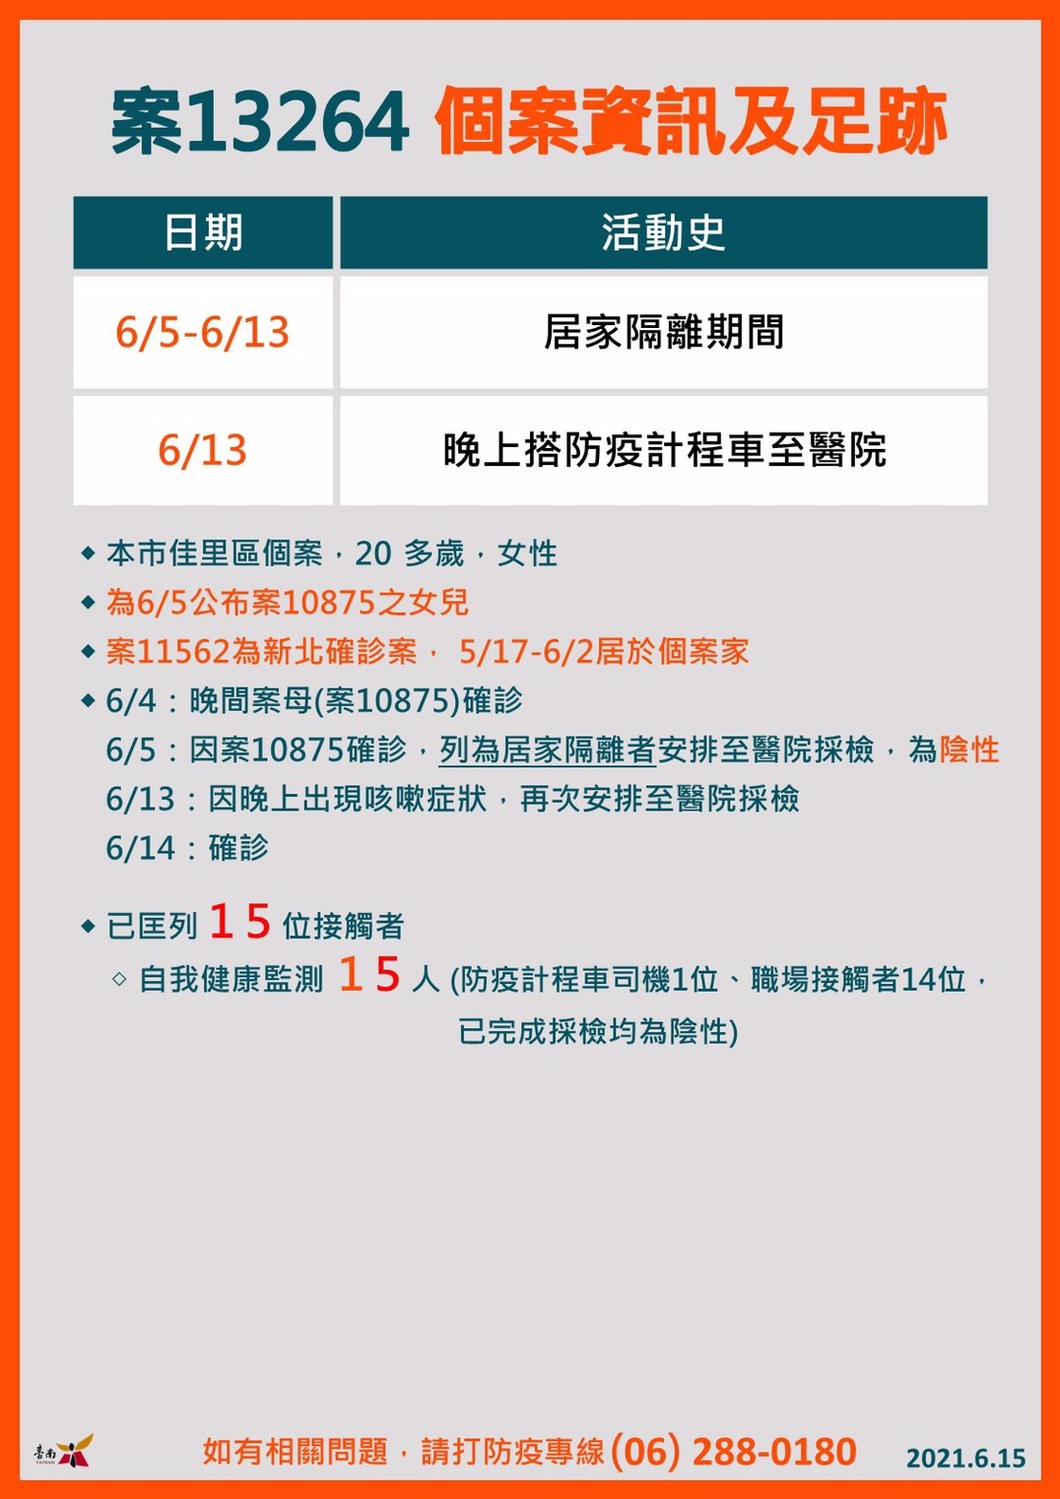 台南新增2例接觸舊案確診個案  高齡接種疫苗情形良好